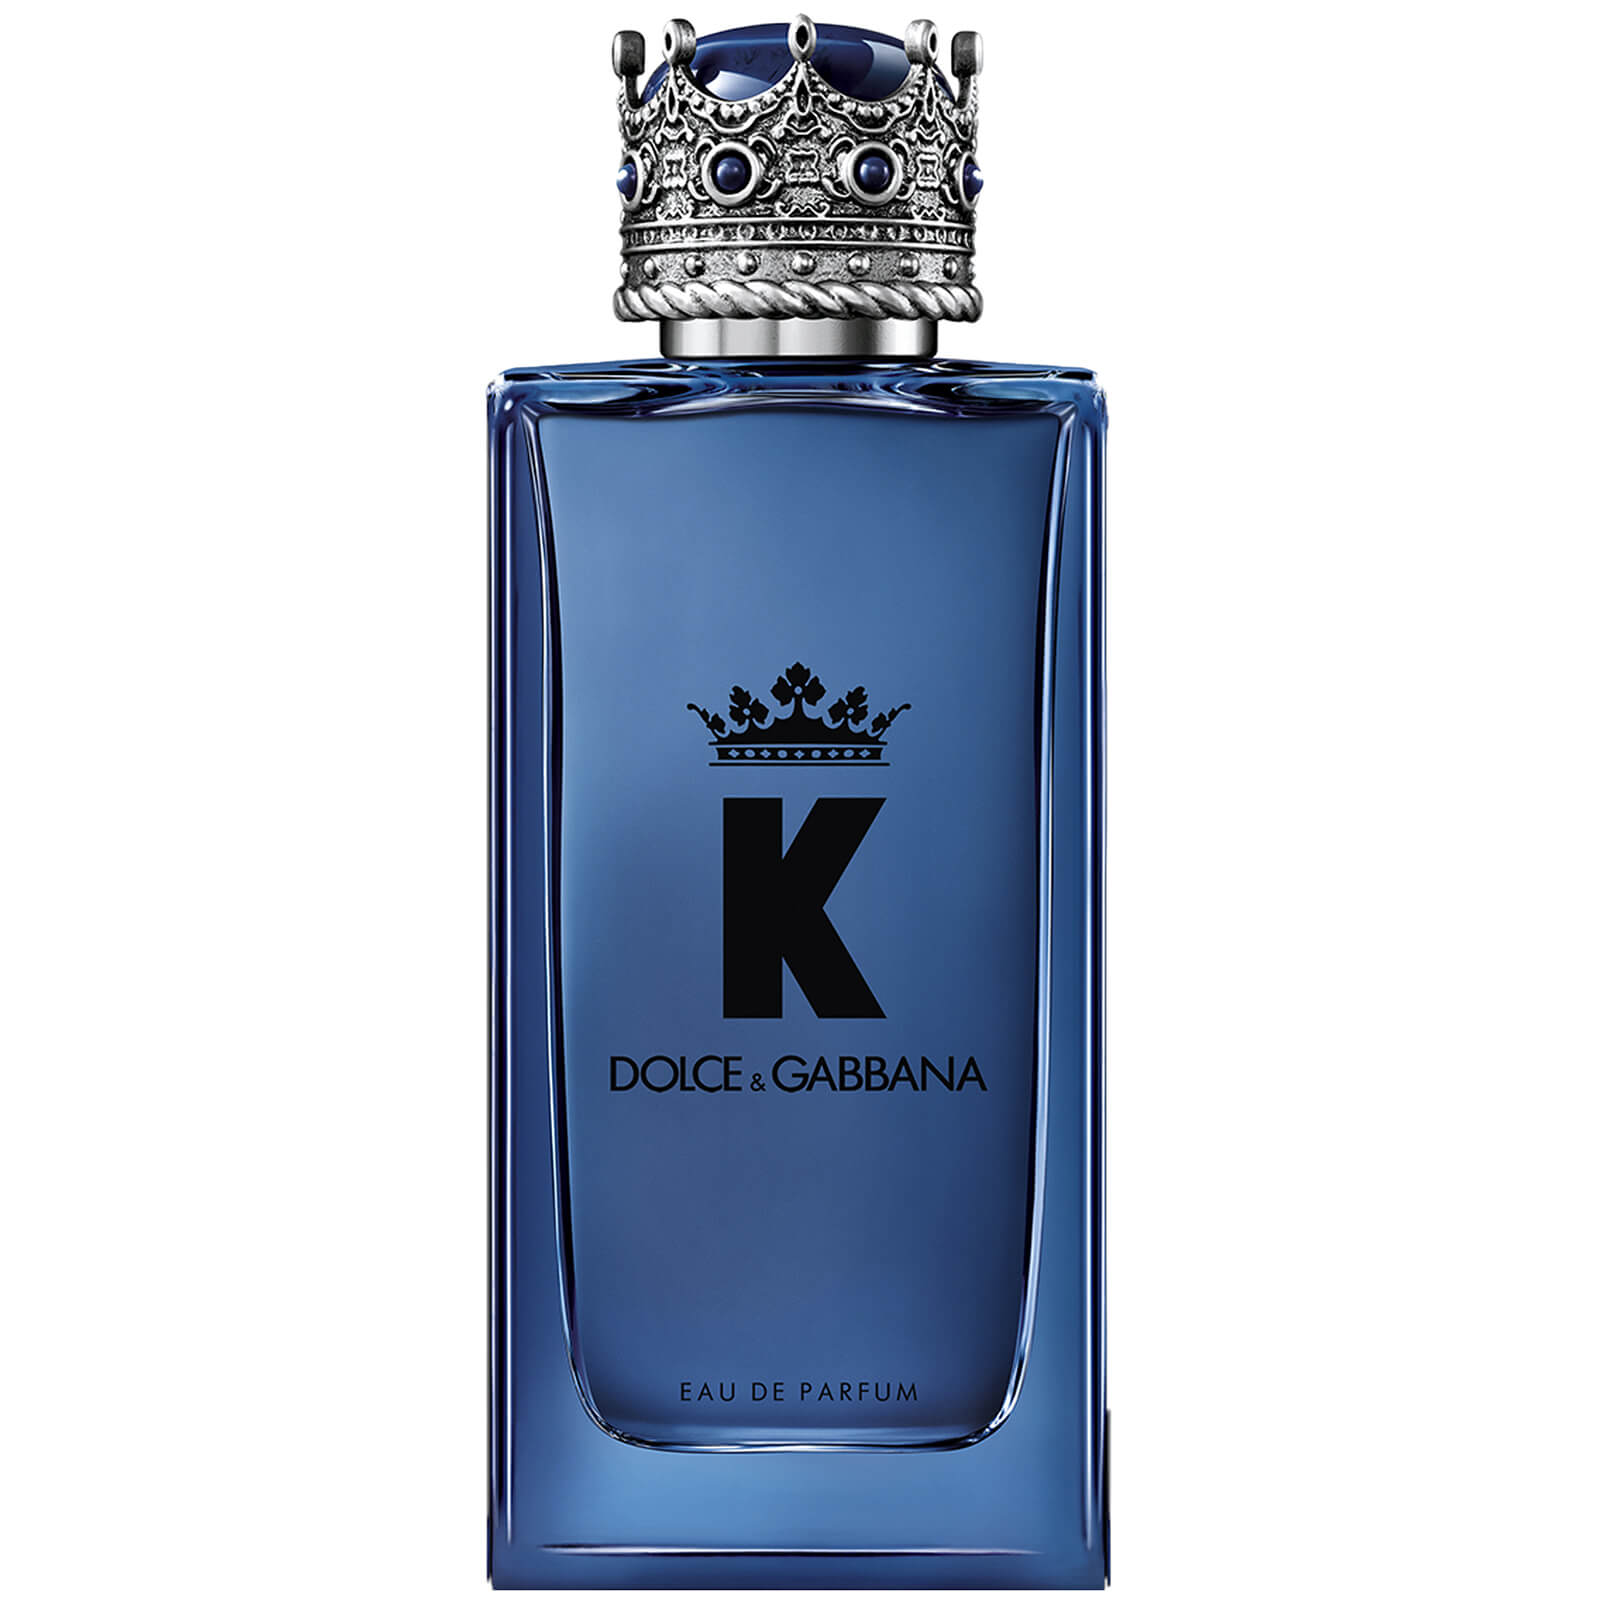 K by Dolce&Gabbana Eau de Parfum (Various Sizes) - 100ml